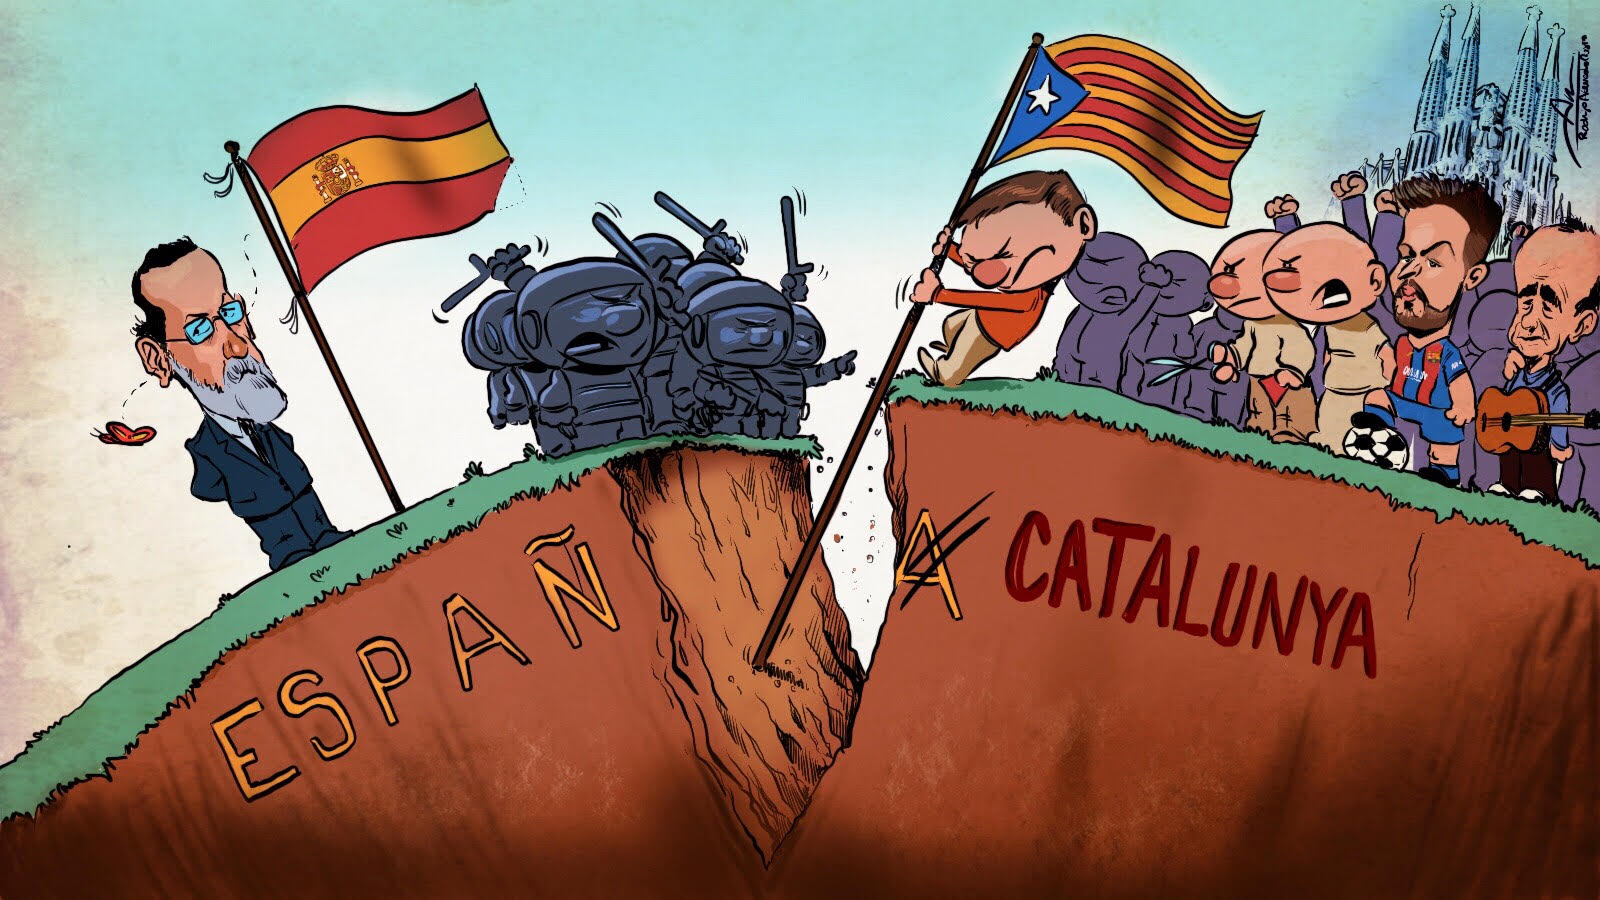 Noul ”Don Quijote” și totul despre ruptura Spania-Catalunya. Istorie, criză, pușcărie, populism, bani pierduți și de la capăt